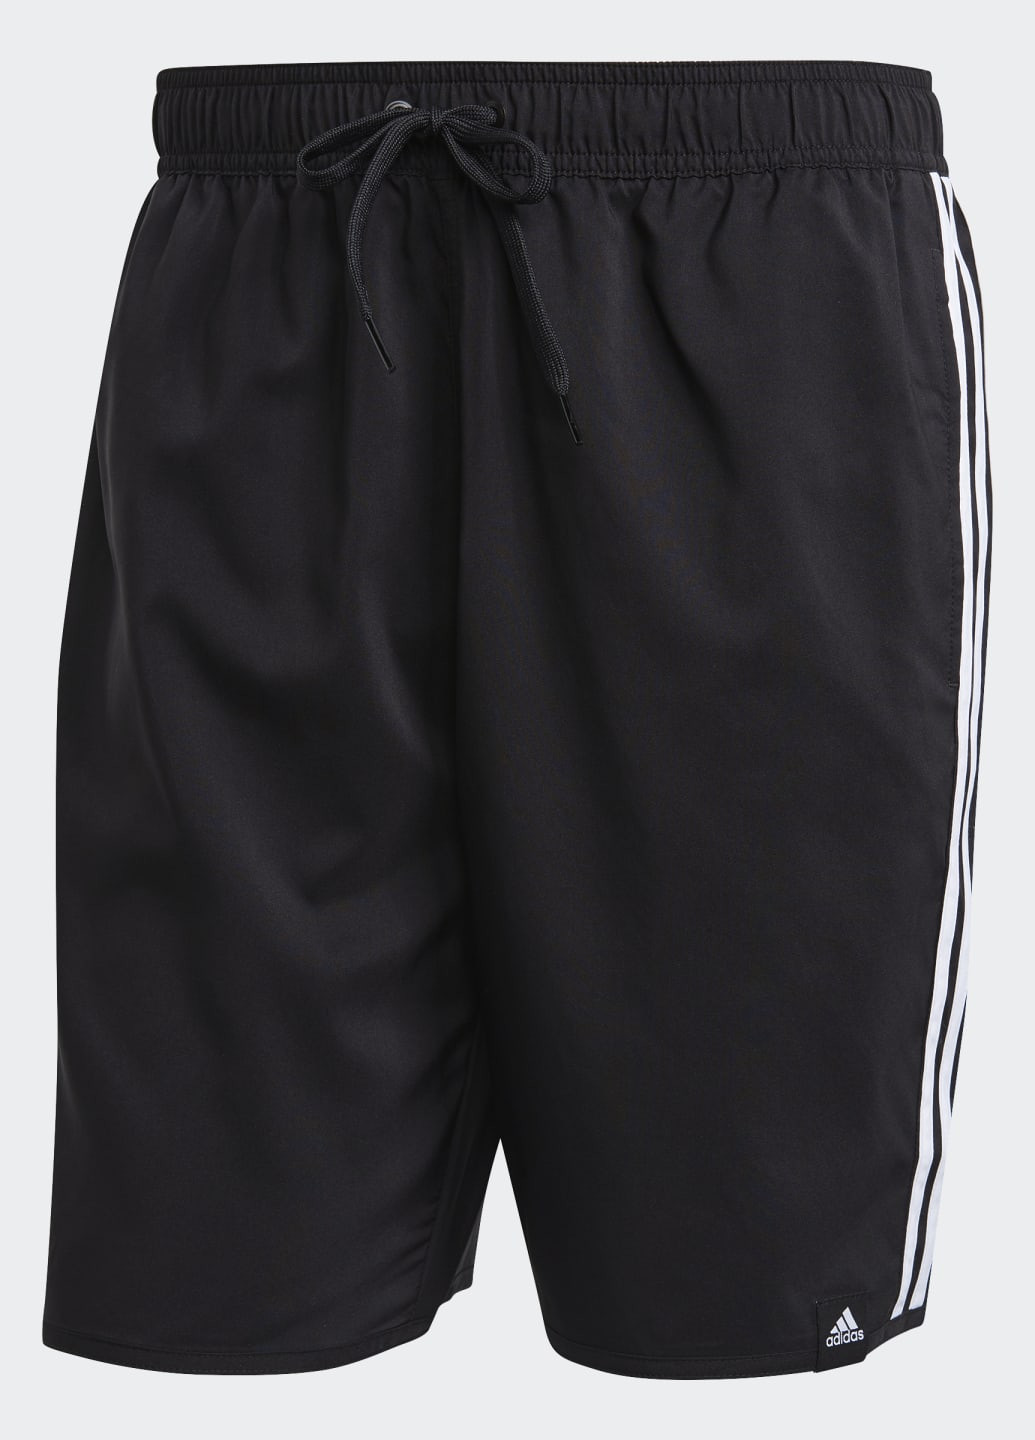 Мужские черные спортивные шорты для плавания classic-length 3-stripes adidas